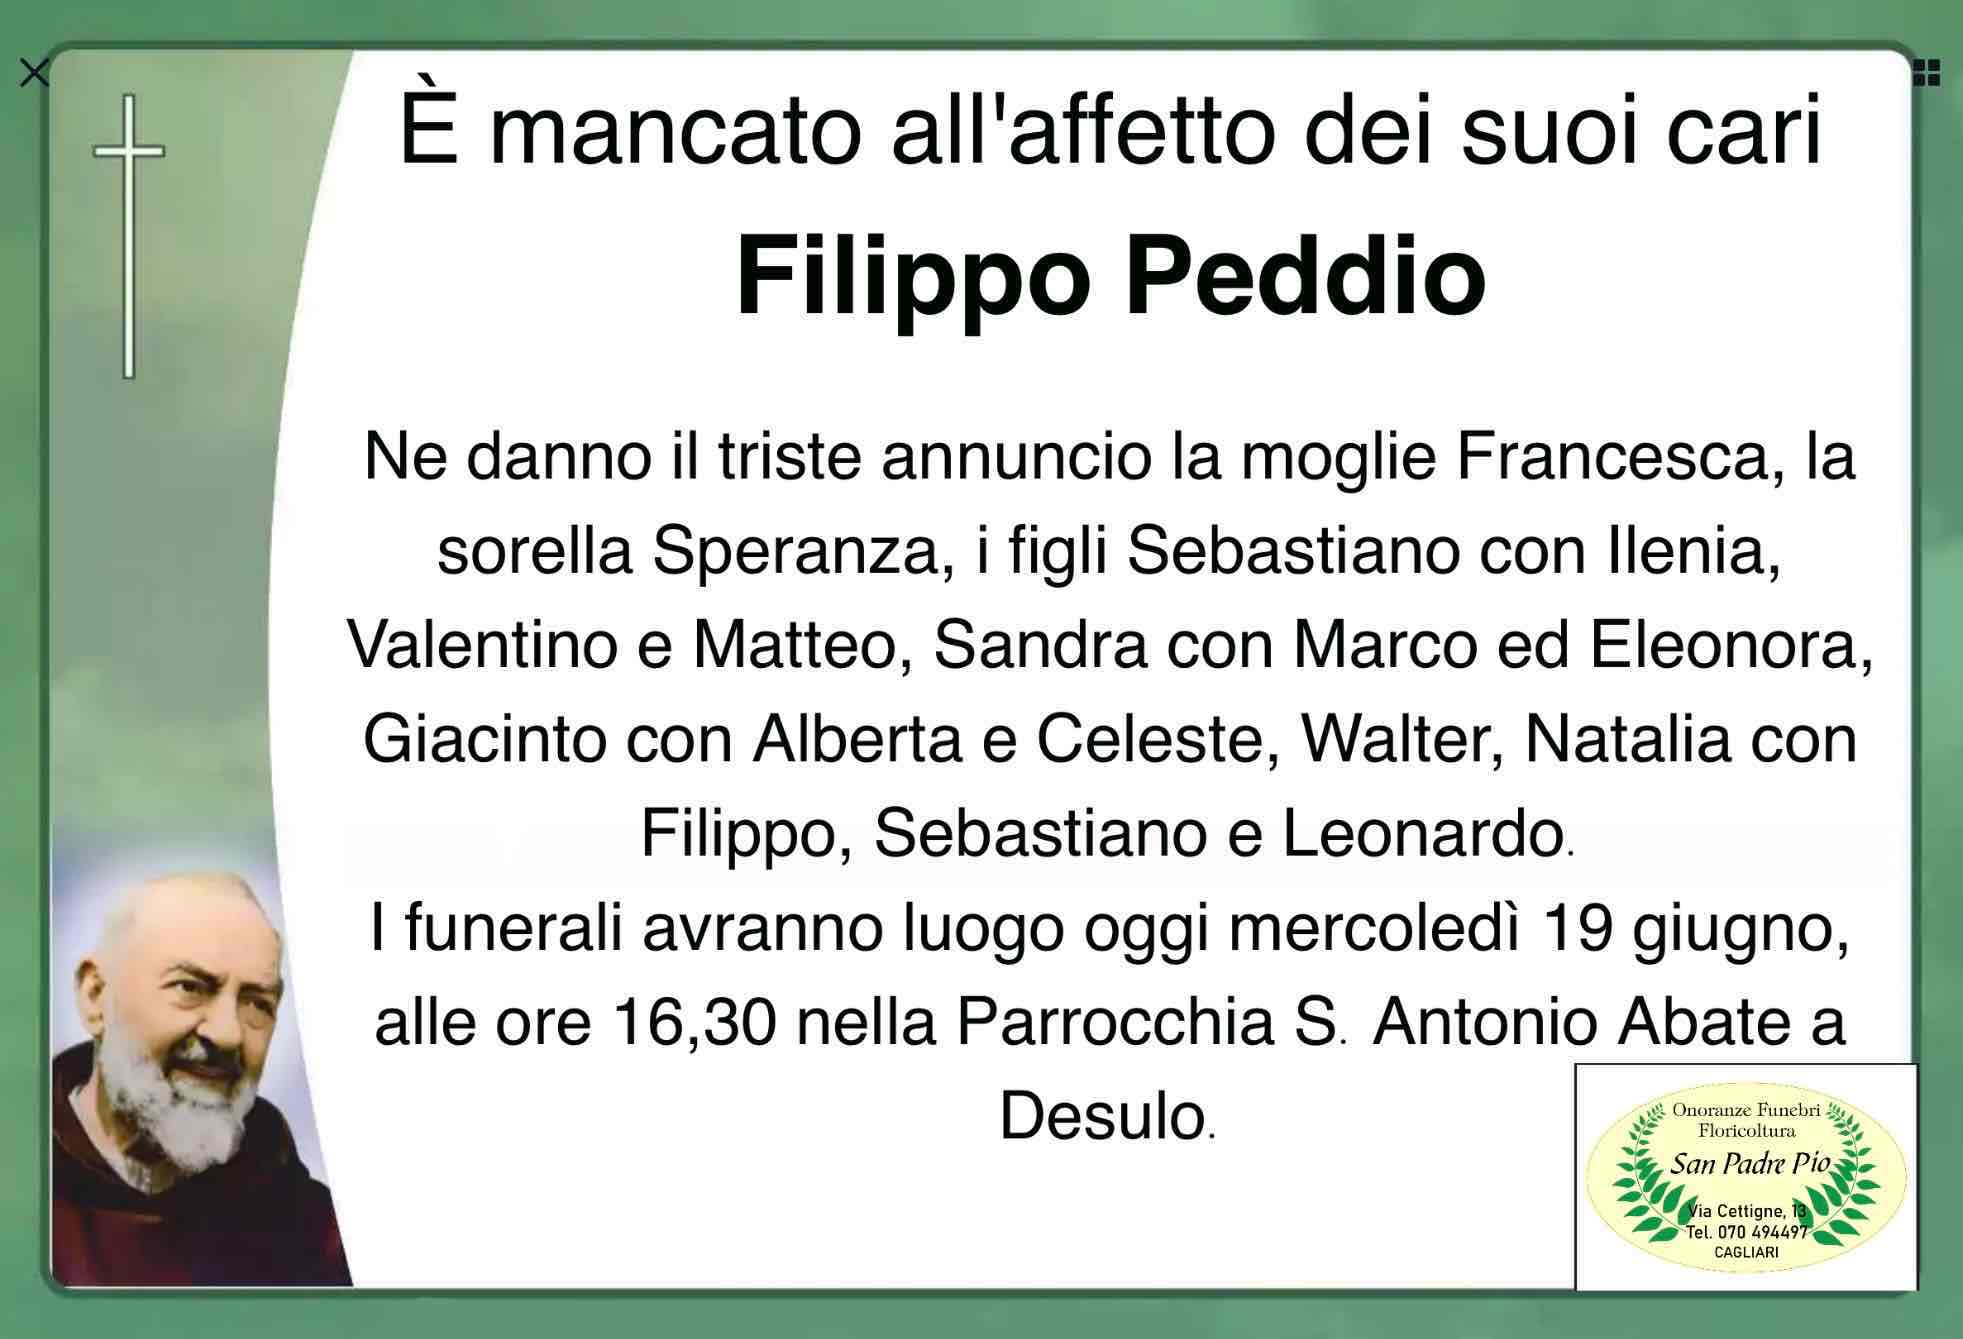 Filippo Peddio